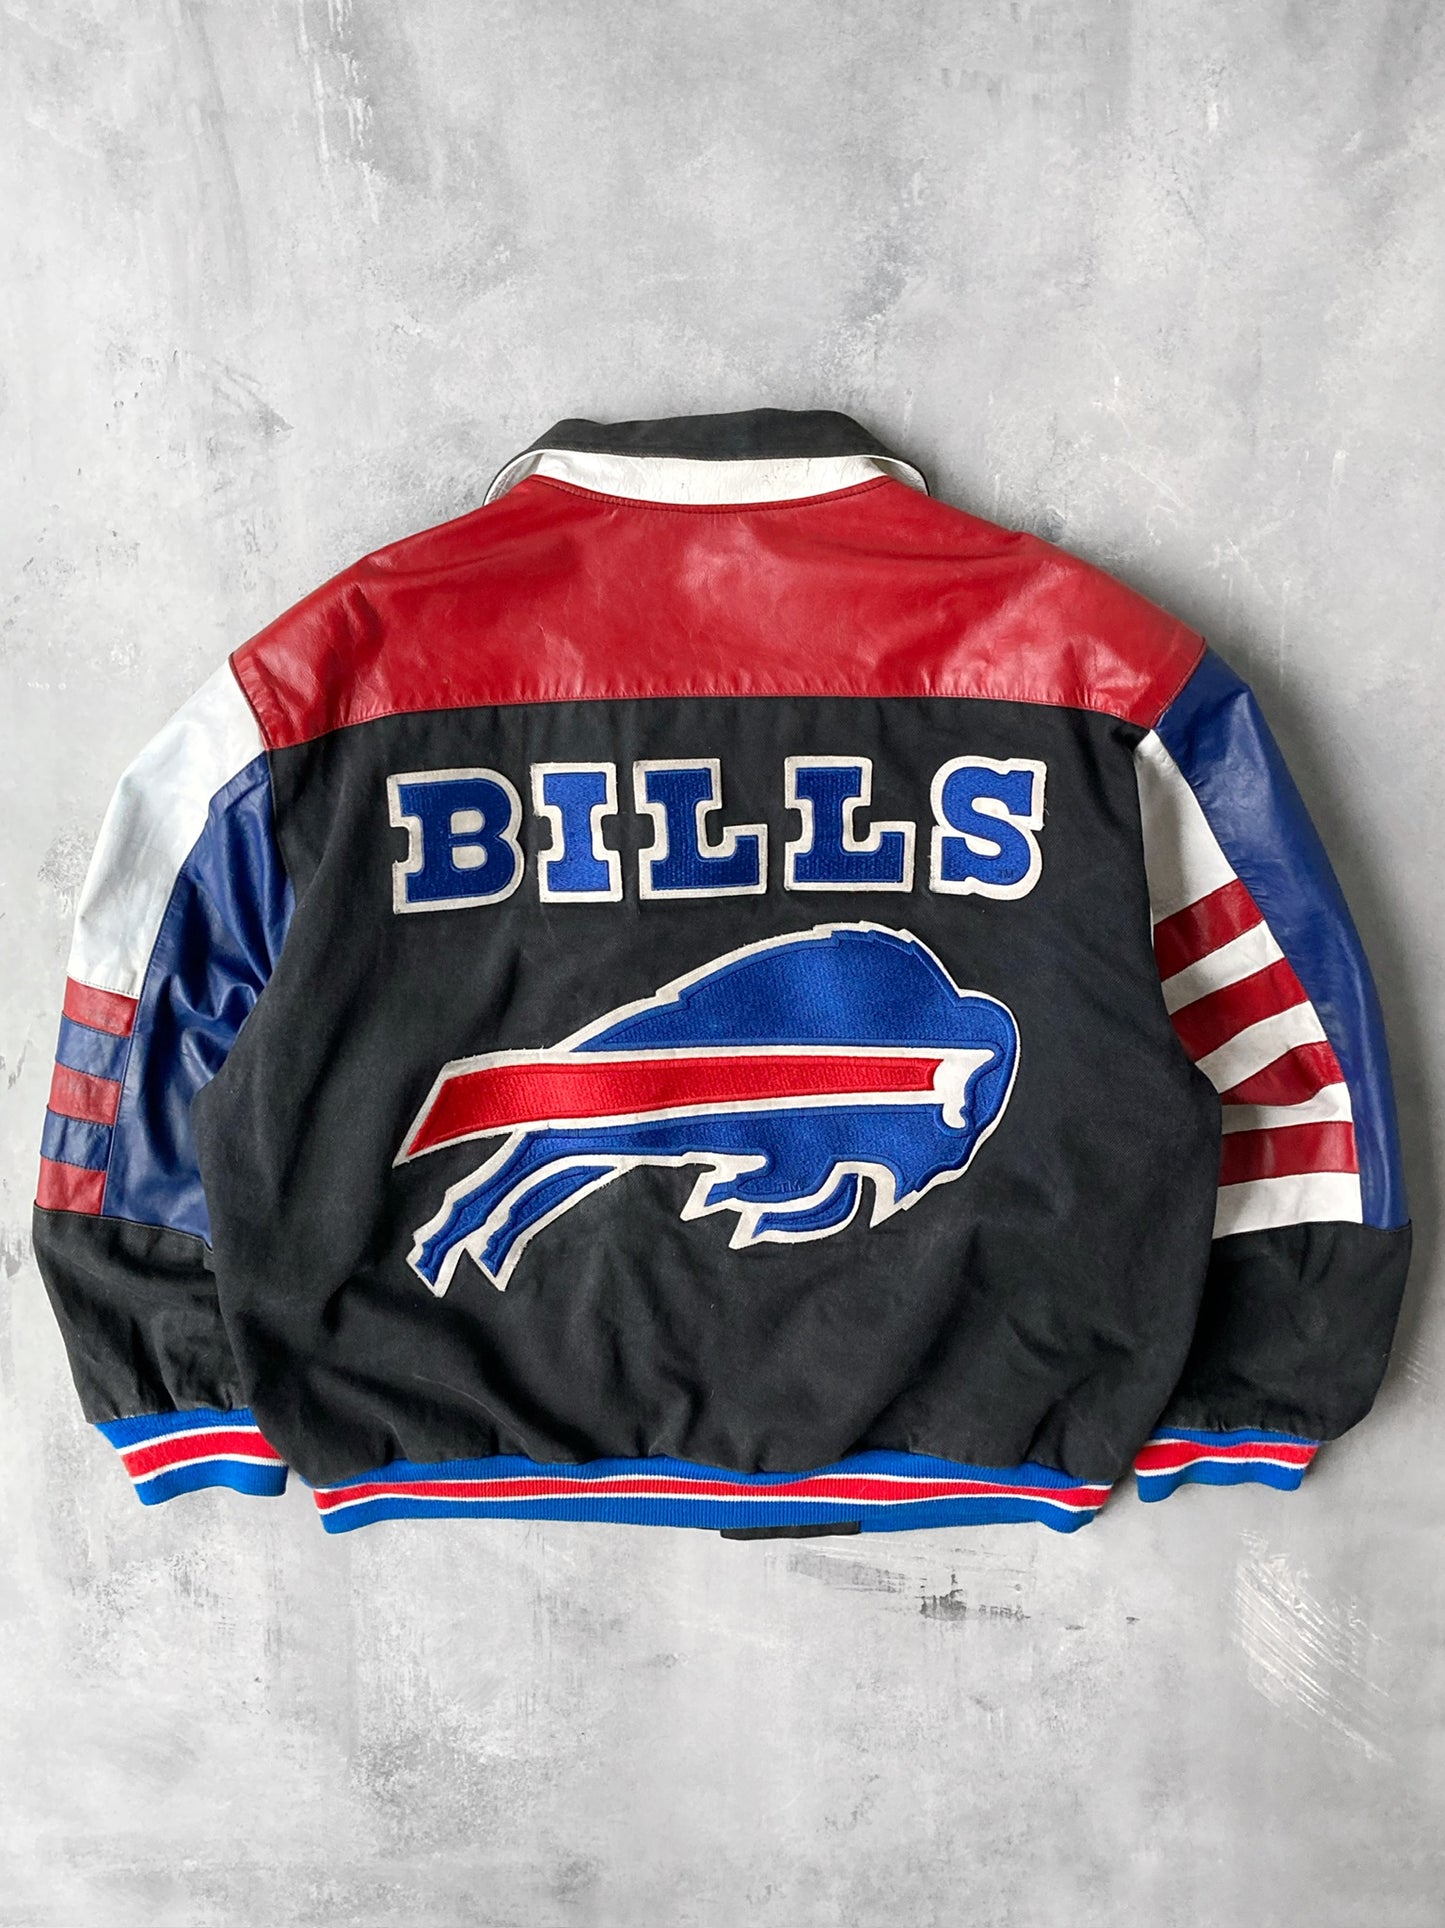 Buffalo Bills Bomber Jacket 90's - Large